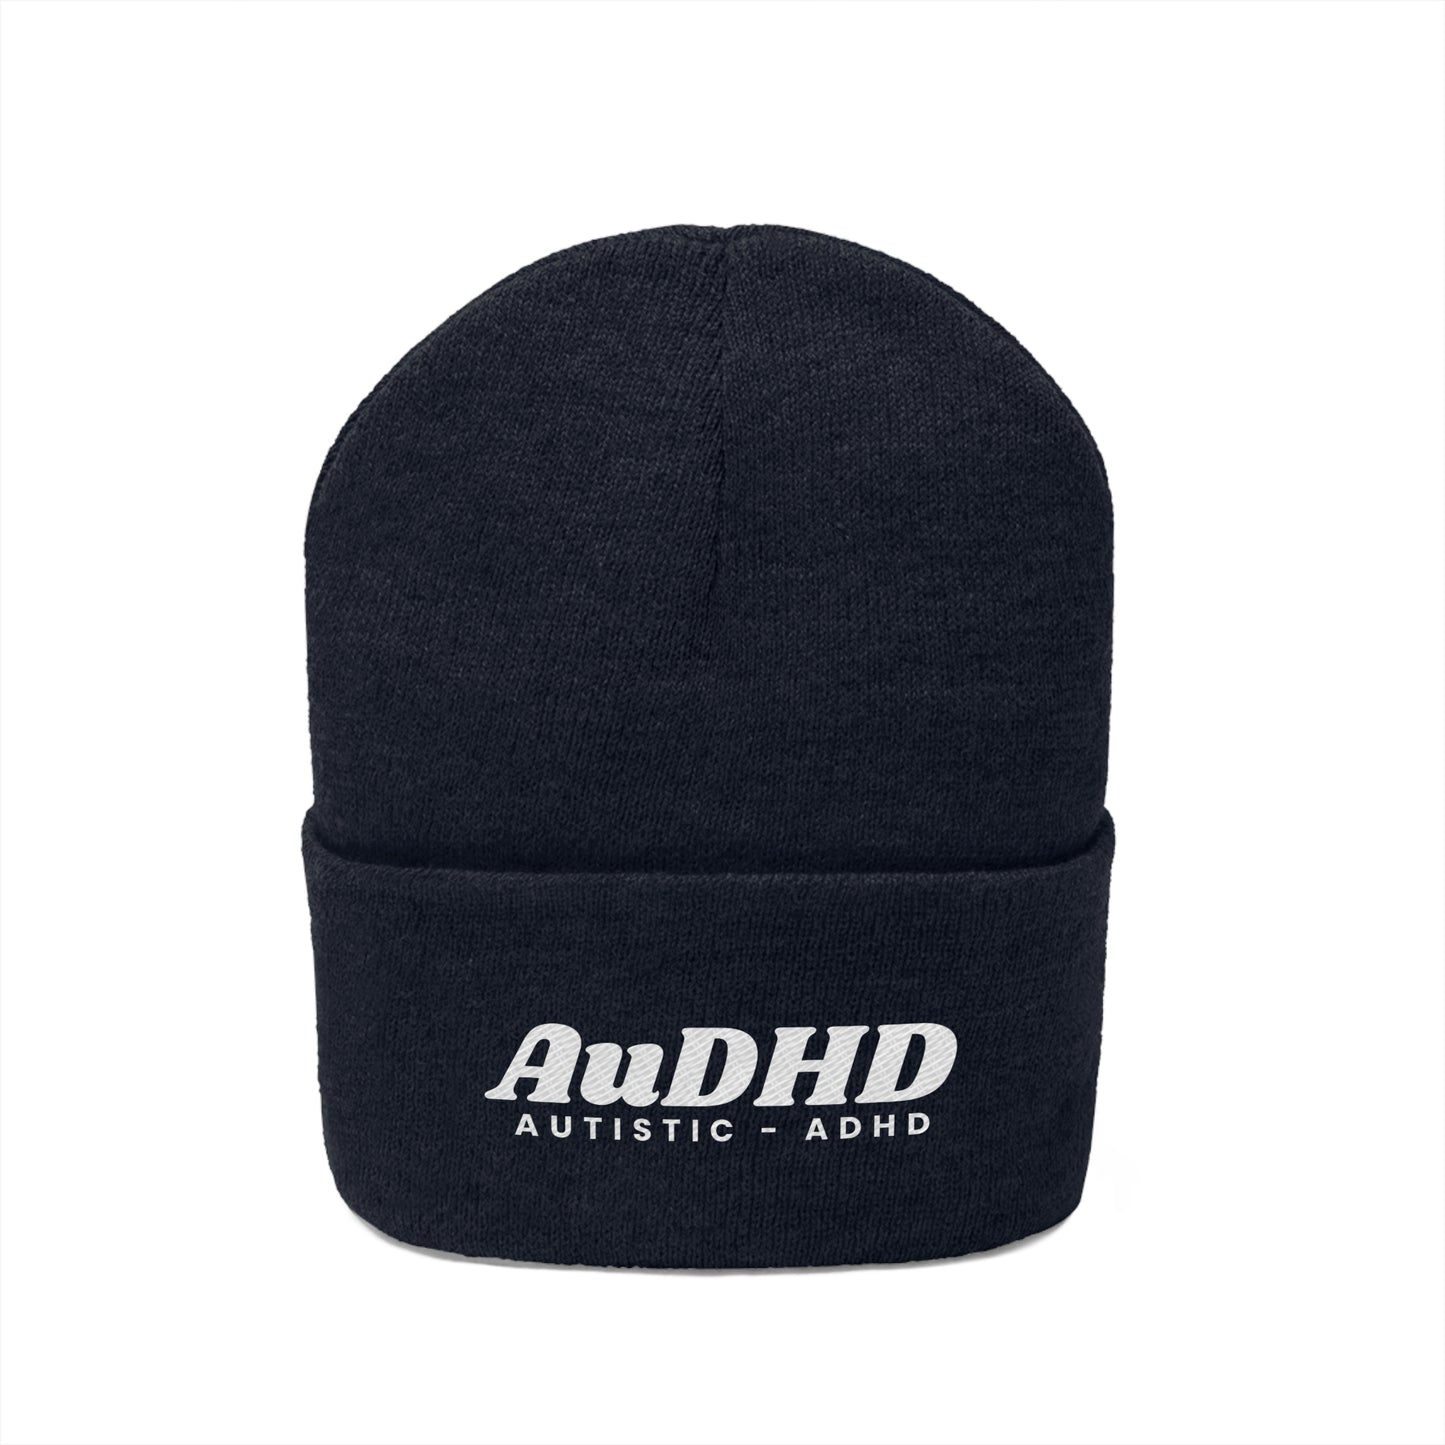 AuDHD Autistic-ADHD Knit Beanie